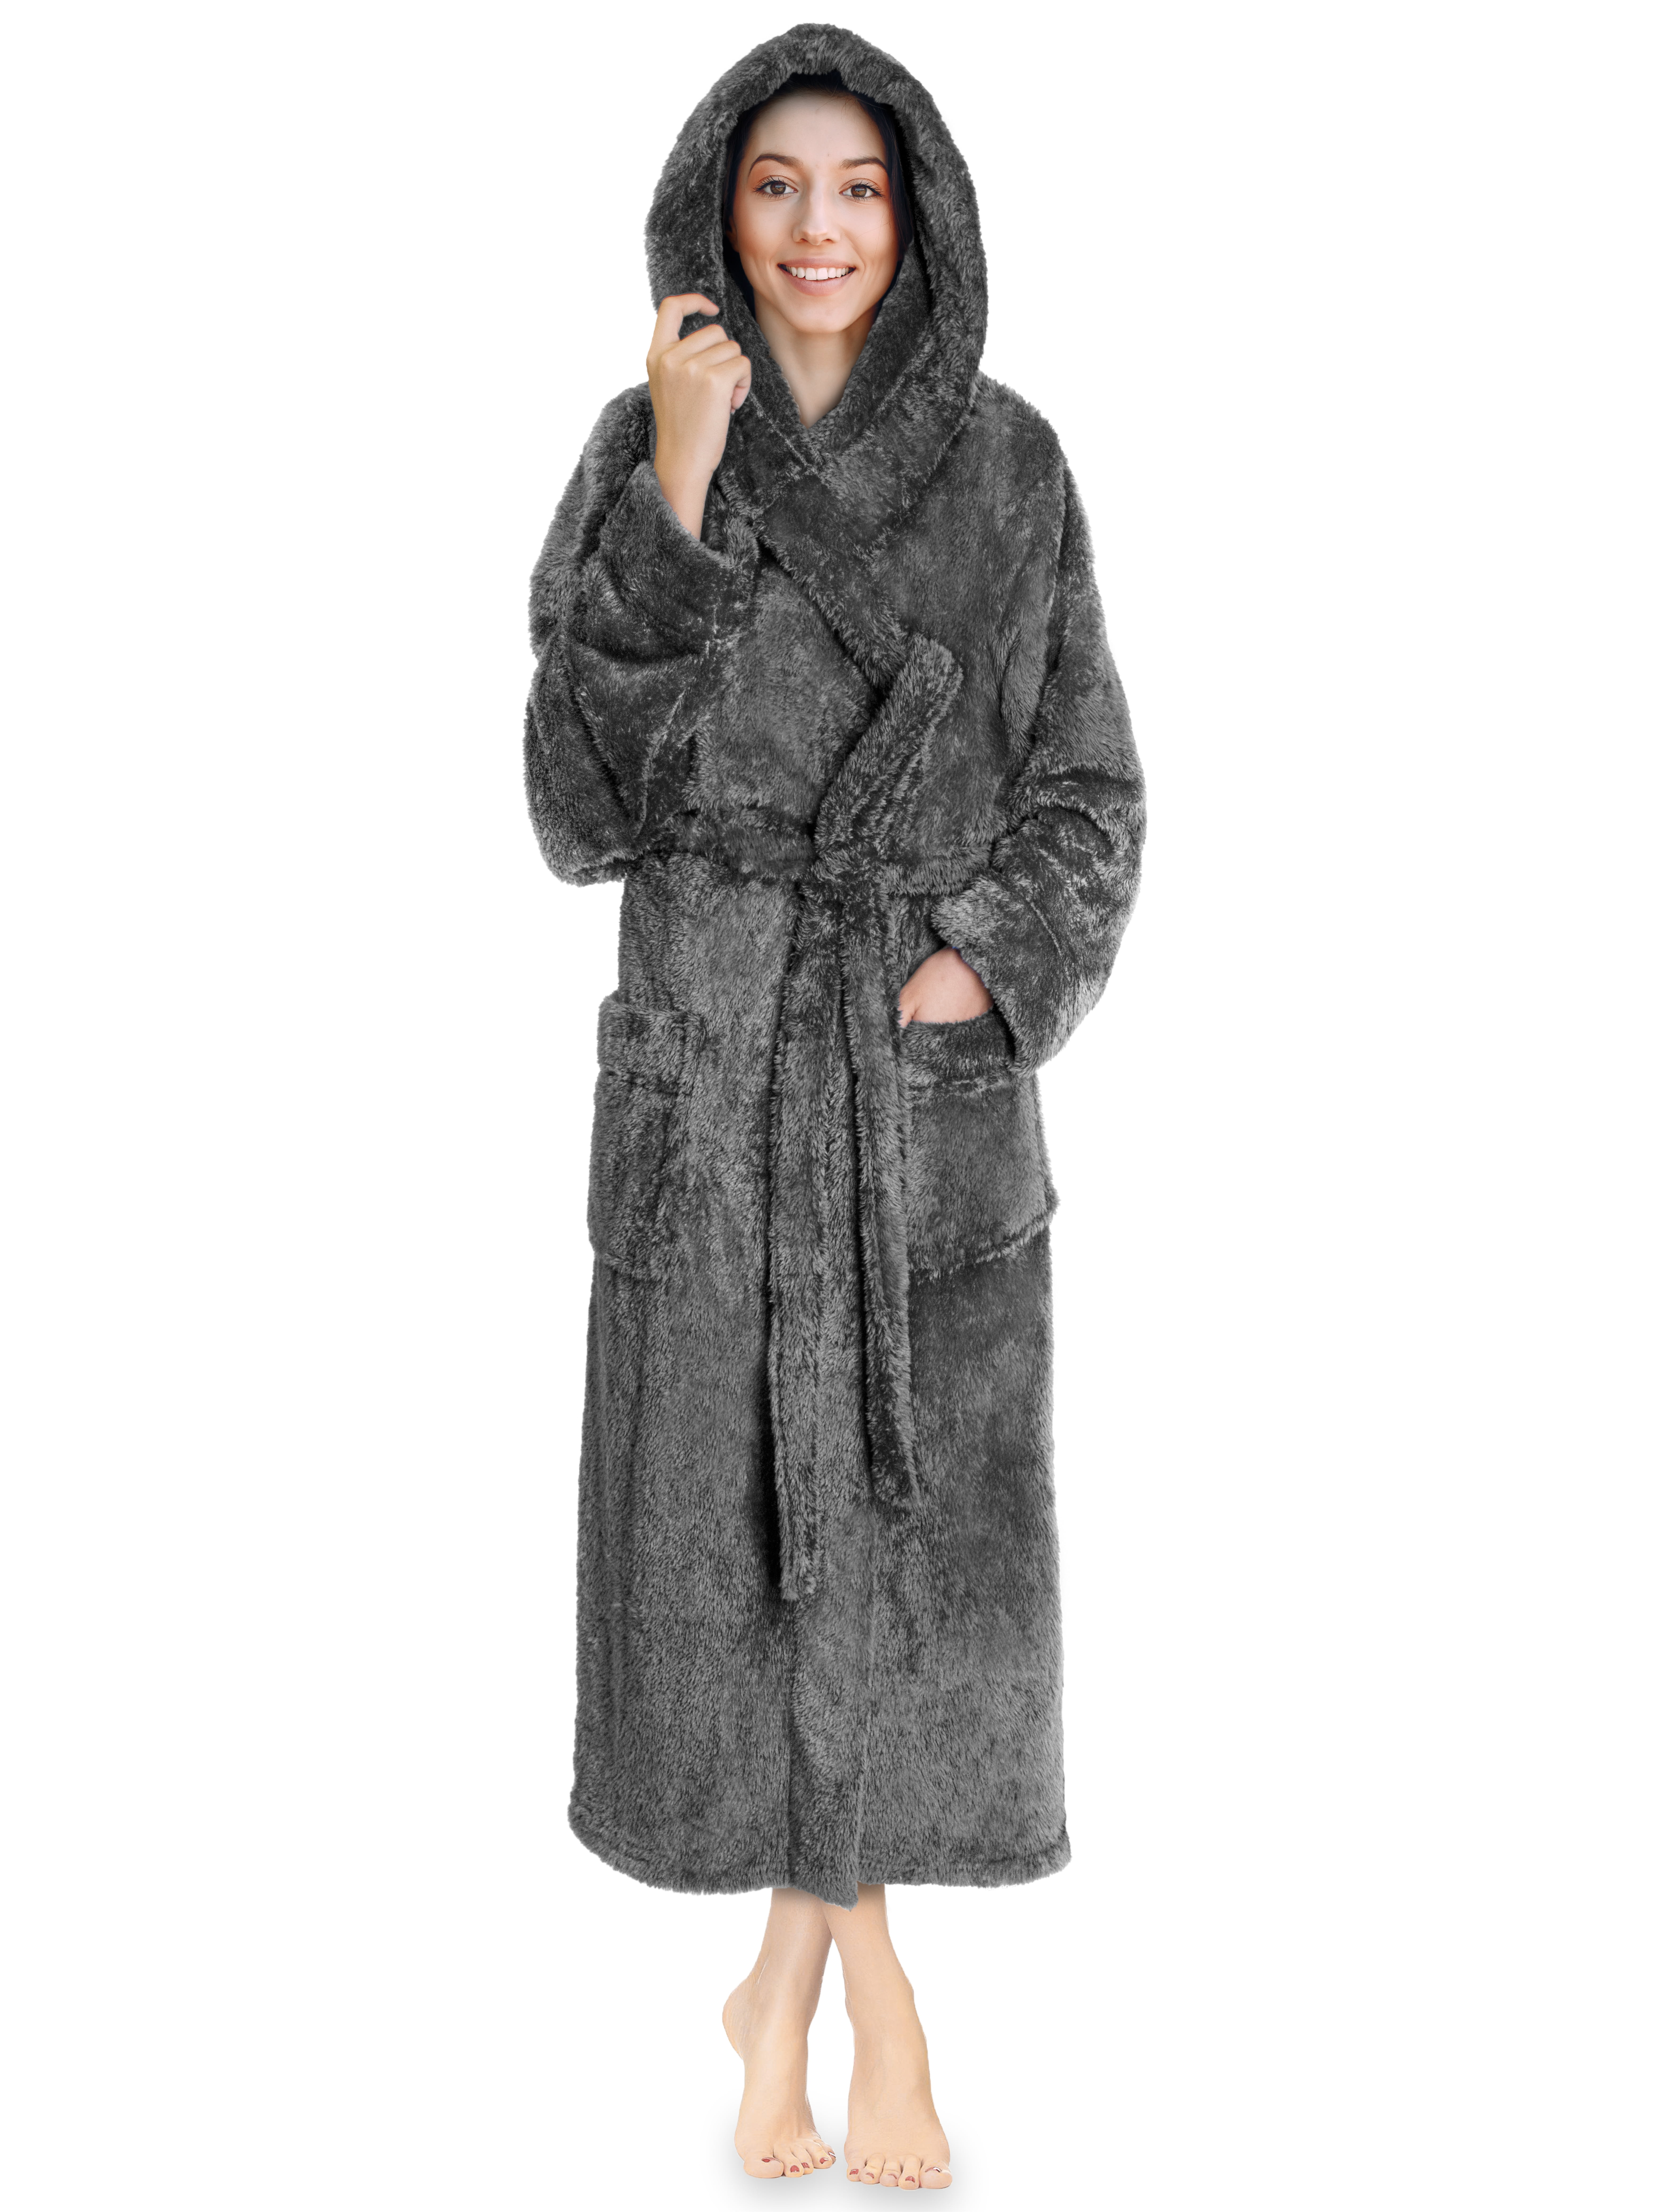 Girls Grey Robe Super Soft Sherpa Hooded Dressing Gown Kids Bathrobe Housecoat 